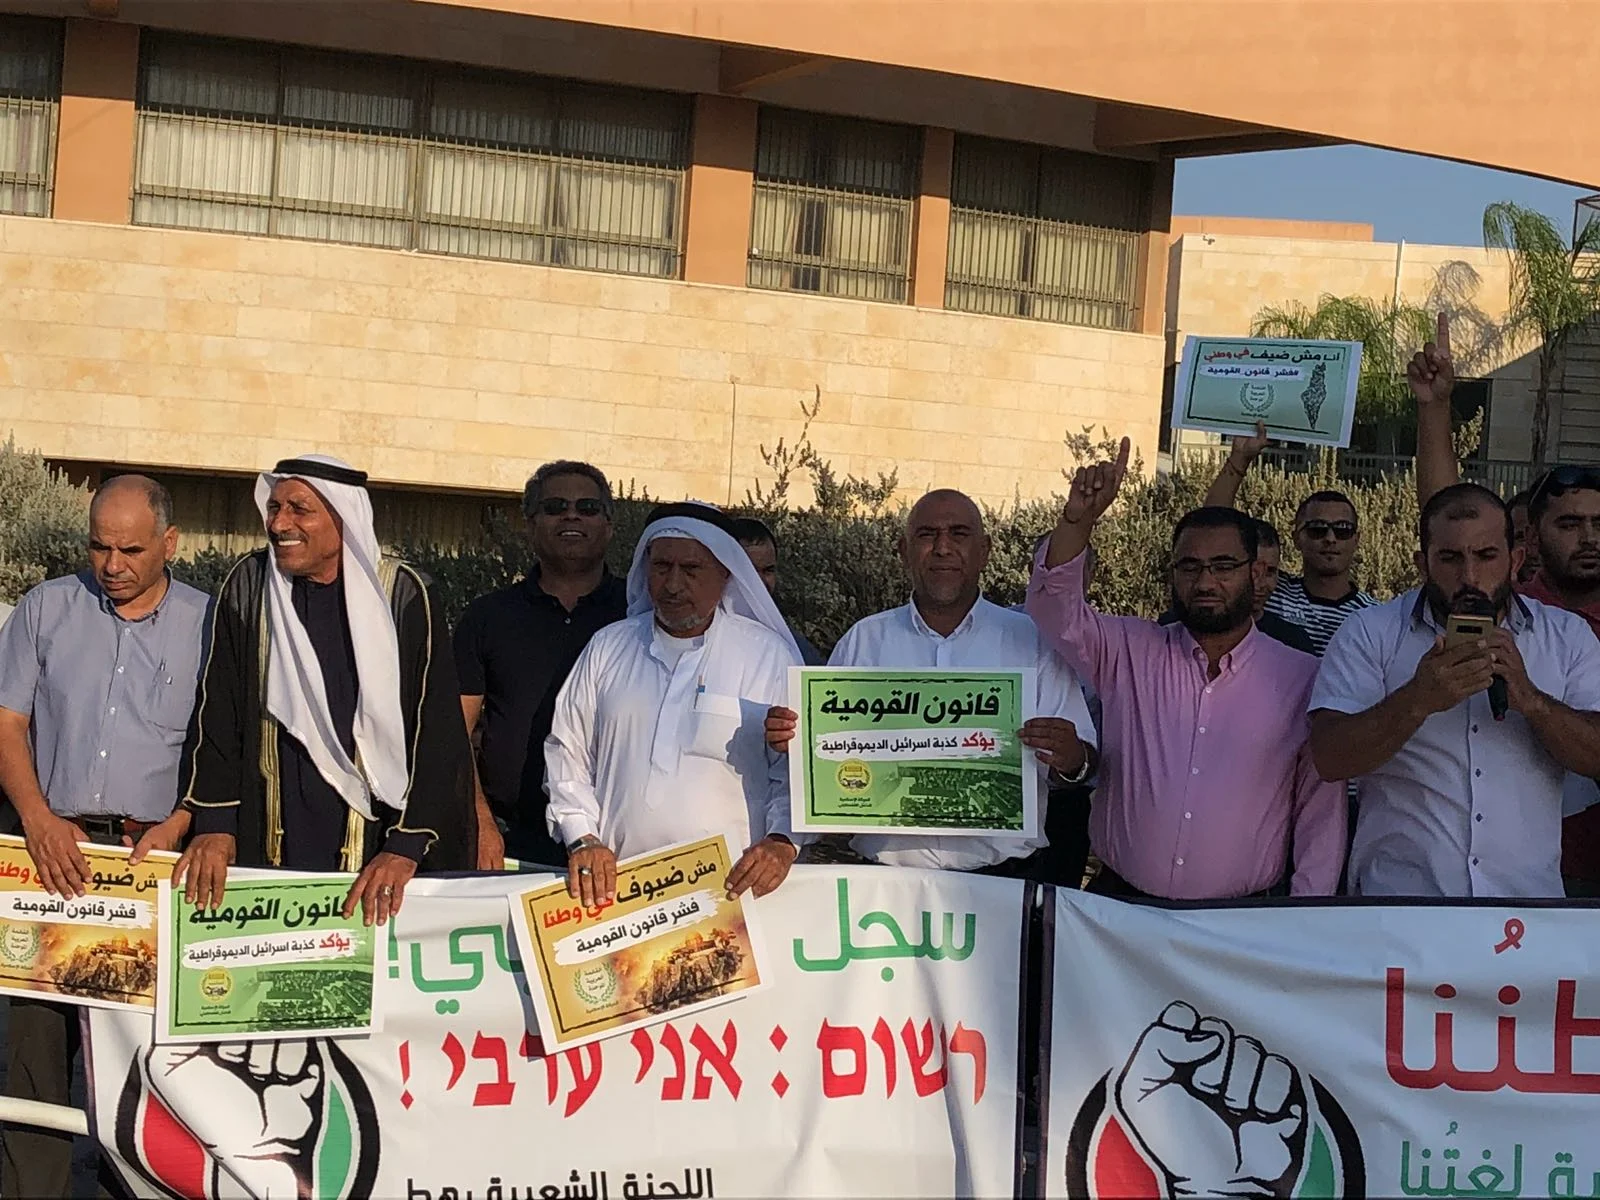 הפגנת החברה הערבית נגד חוק הלאום בעיר רהט